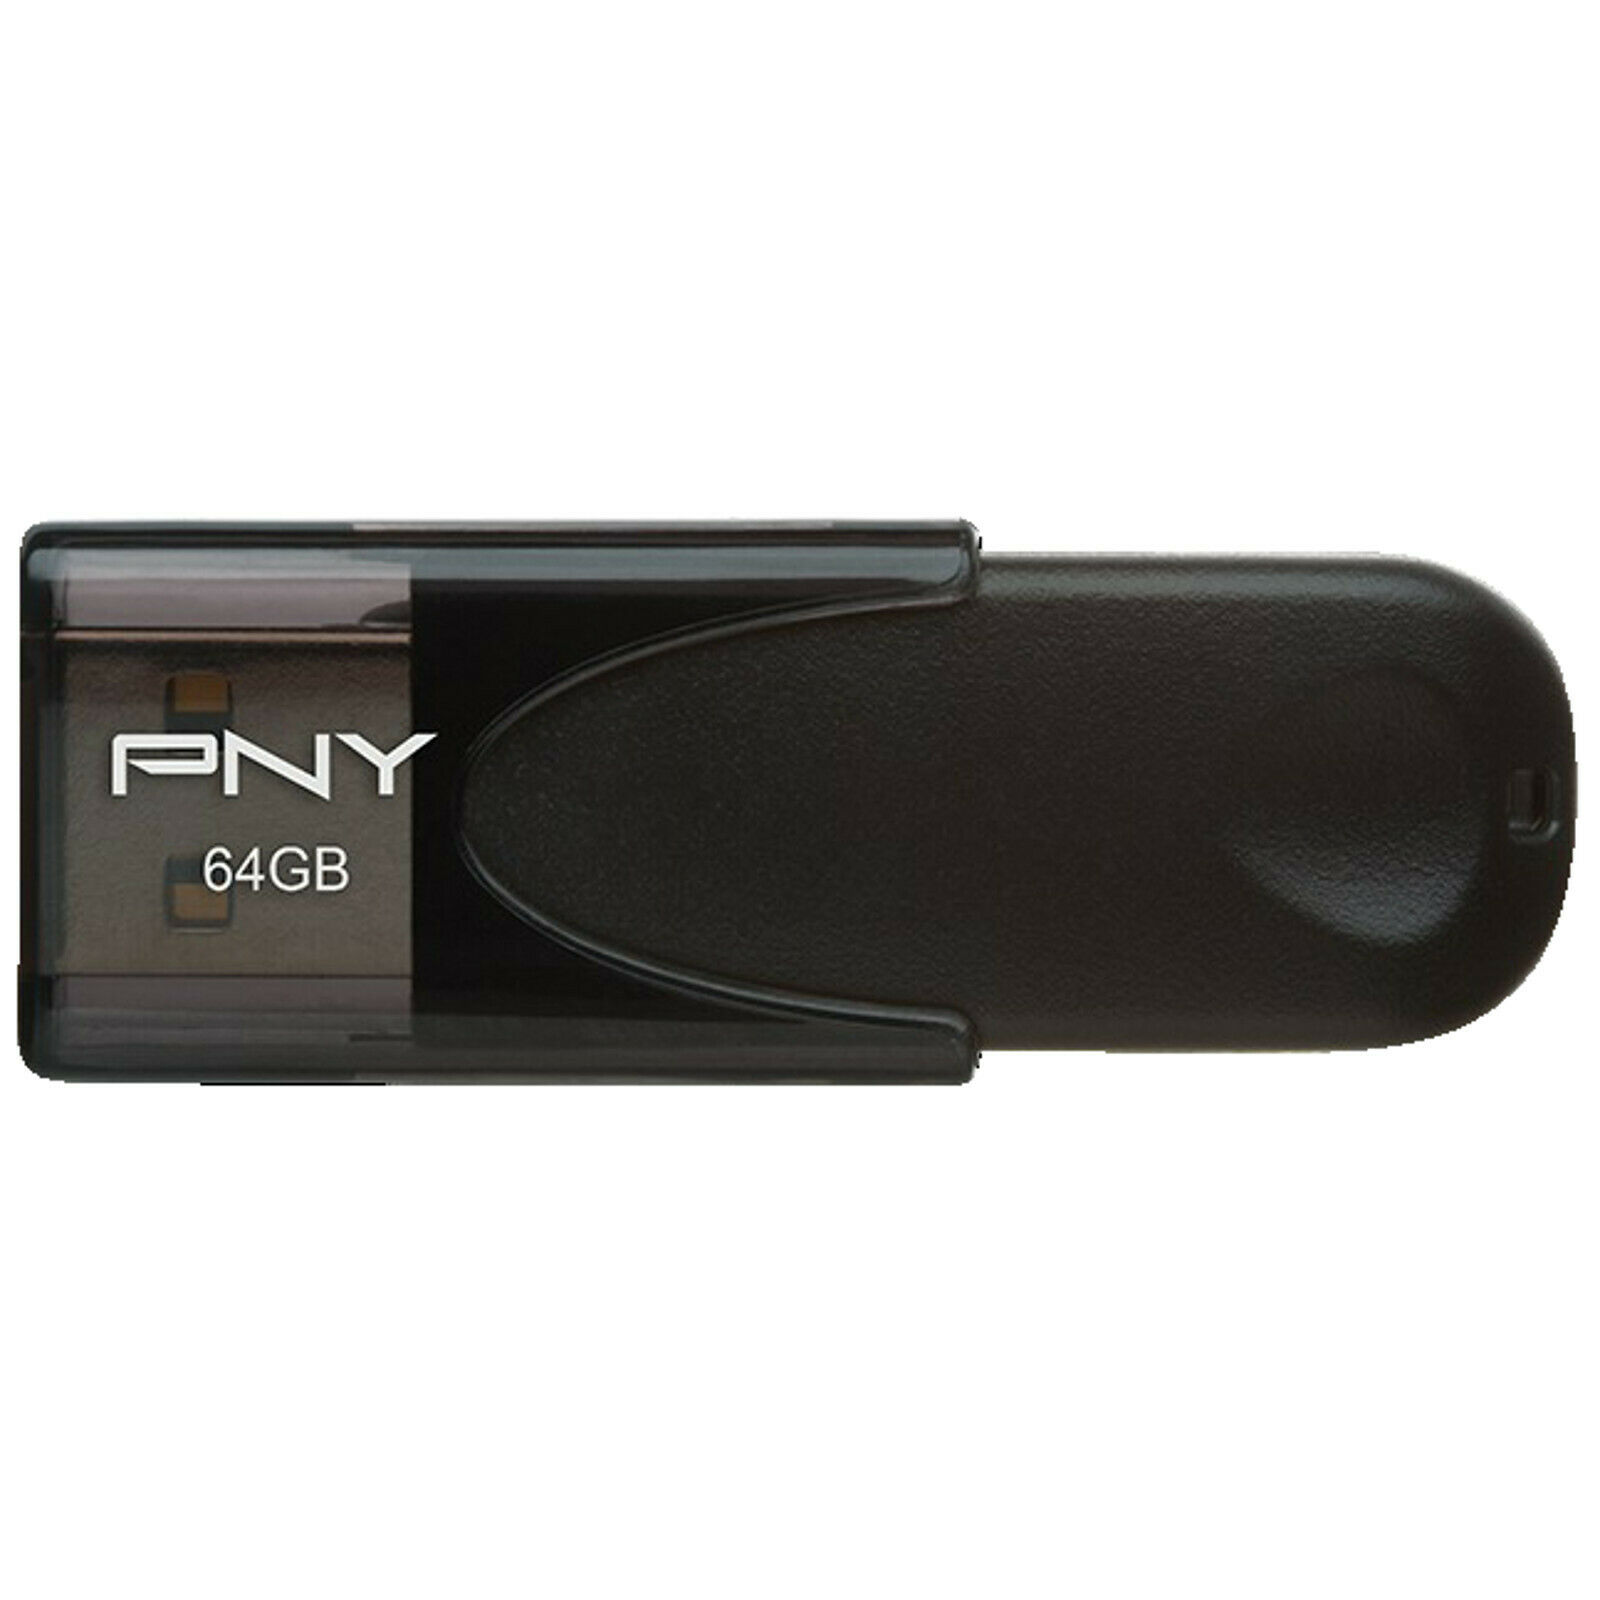 Bild zu 64 GB USB-Stick PNY Attache 4 für 5€ (Vergleich: 7,90€)